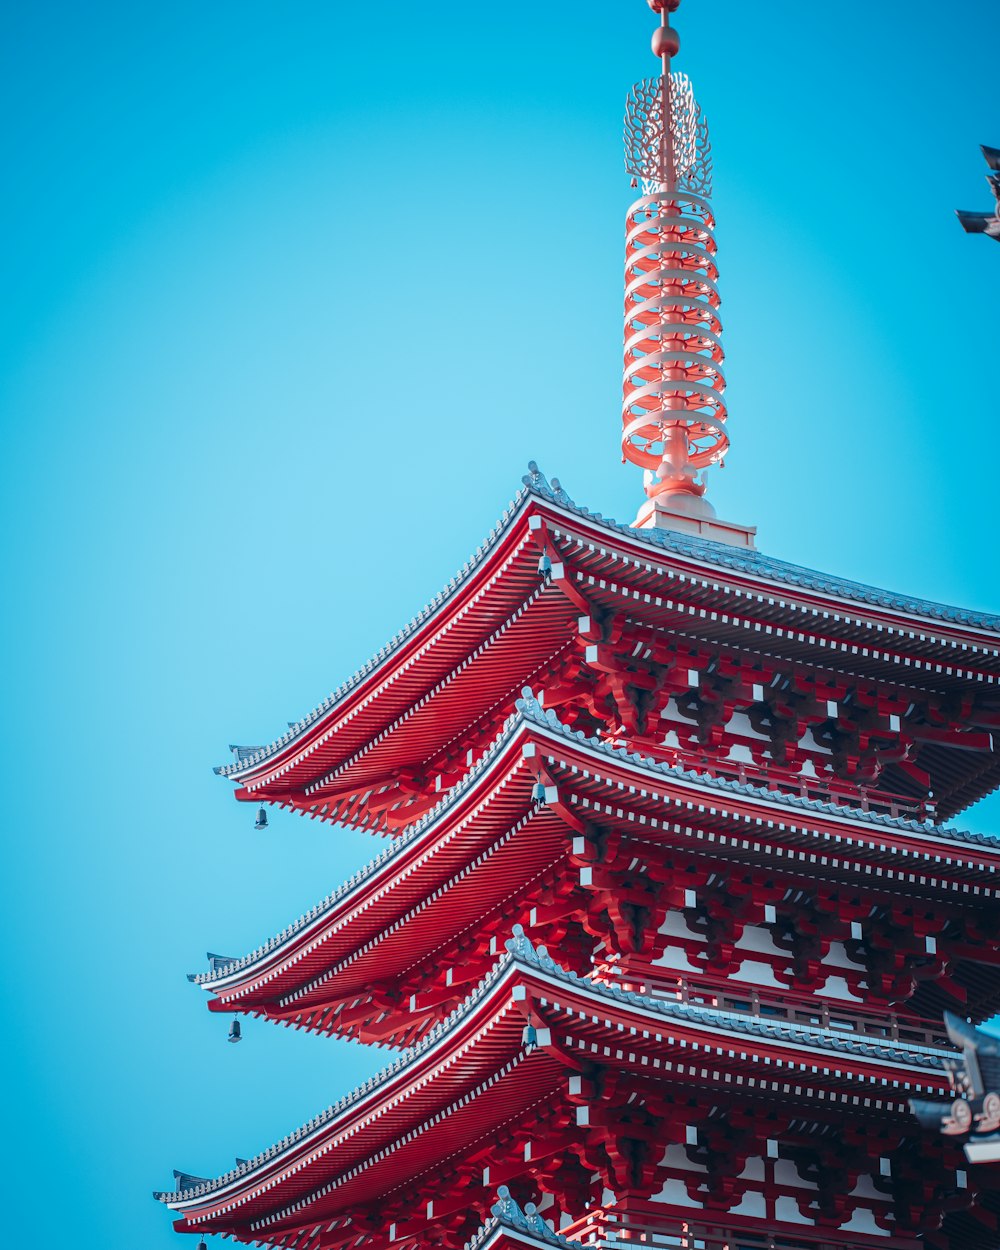 Una alta pagoda roja con un cielo azul en el fondo